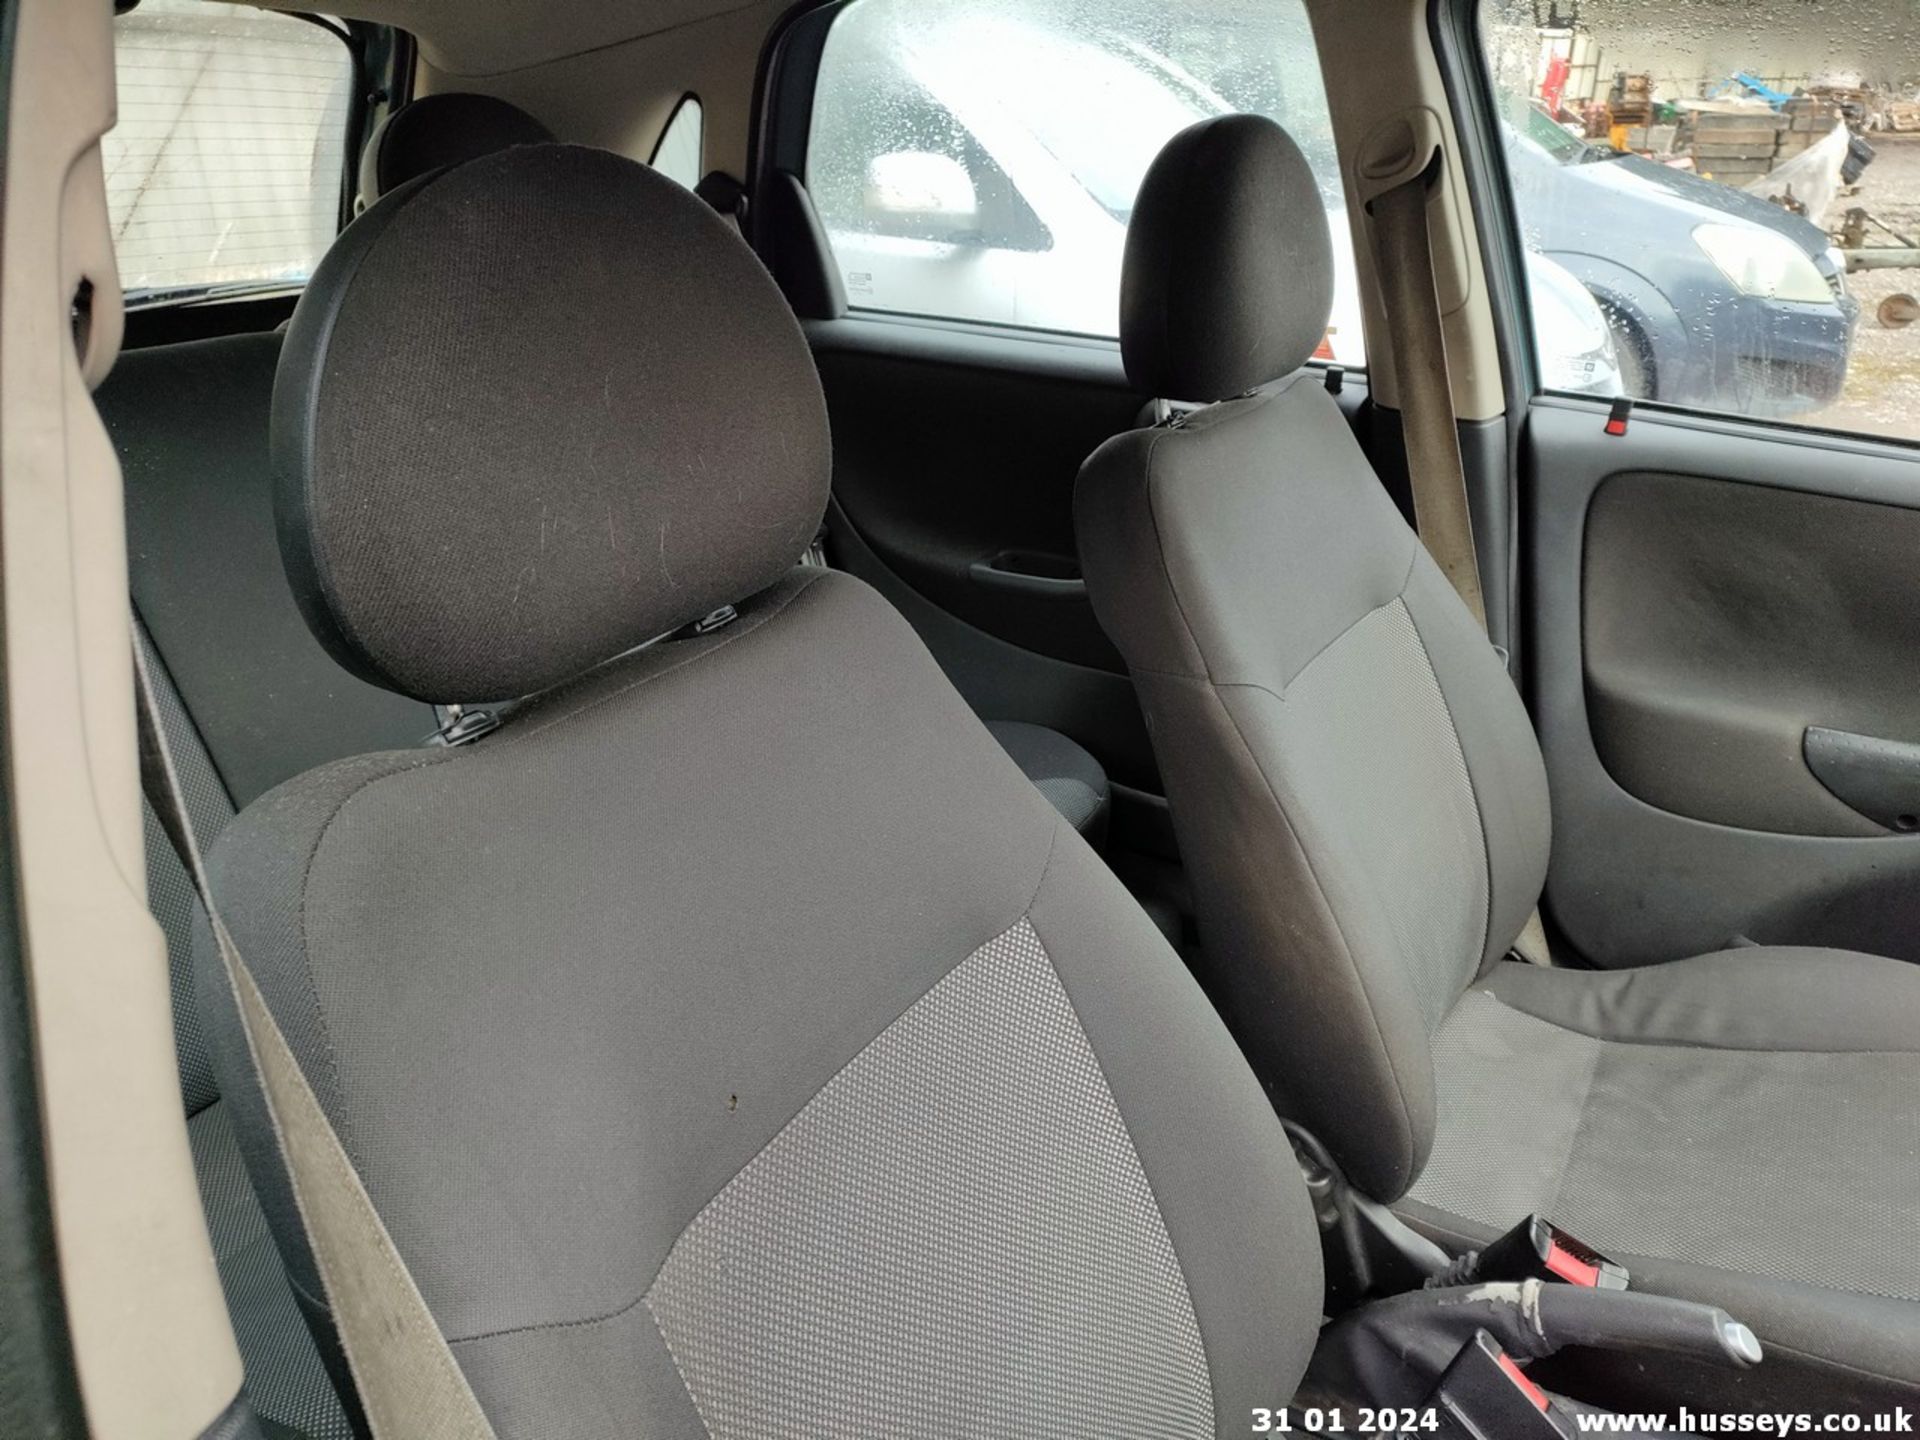 06/56 VAUXHALL CORSA DESIGN 16V TWINPORT - 1364cc 5dr Hatchback (Grey, 110k) - Image 38 of 46